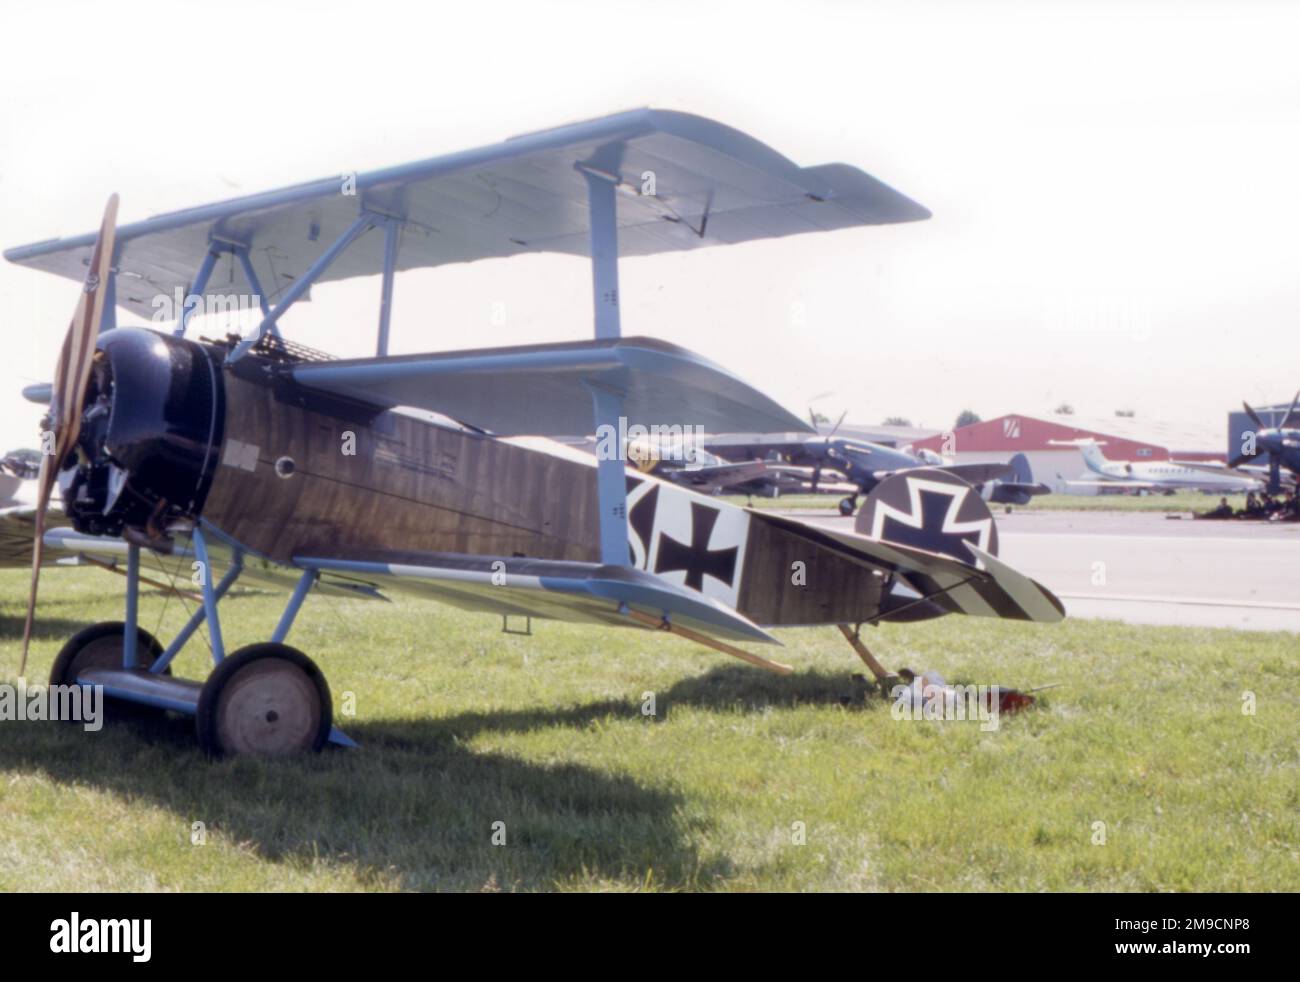 Ein deutsches Dreiflugzeug aus dem Jahr 1915-35 auf einem Flugplatz aus dem 21. Jahrhundert. Stockfoto